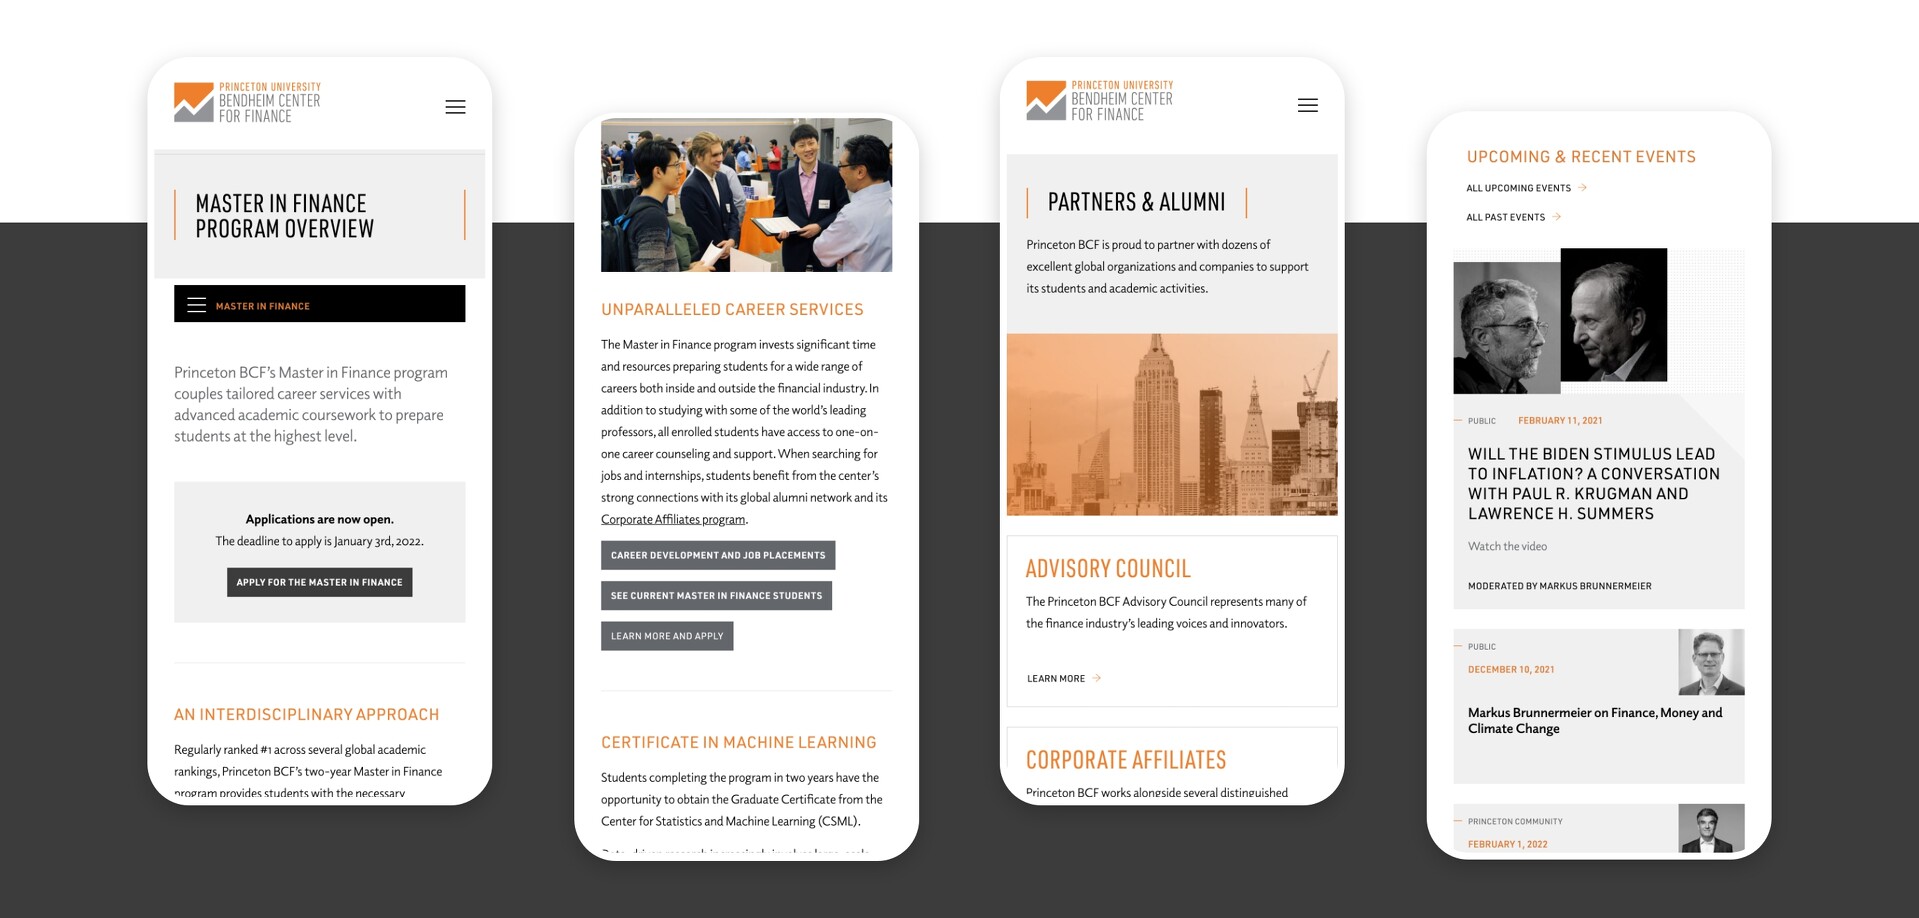 Bendheim Center for Finance at Princeton Mobile Website Design